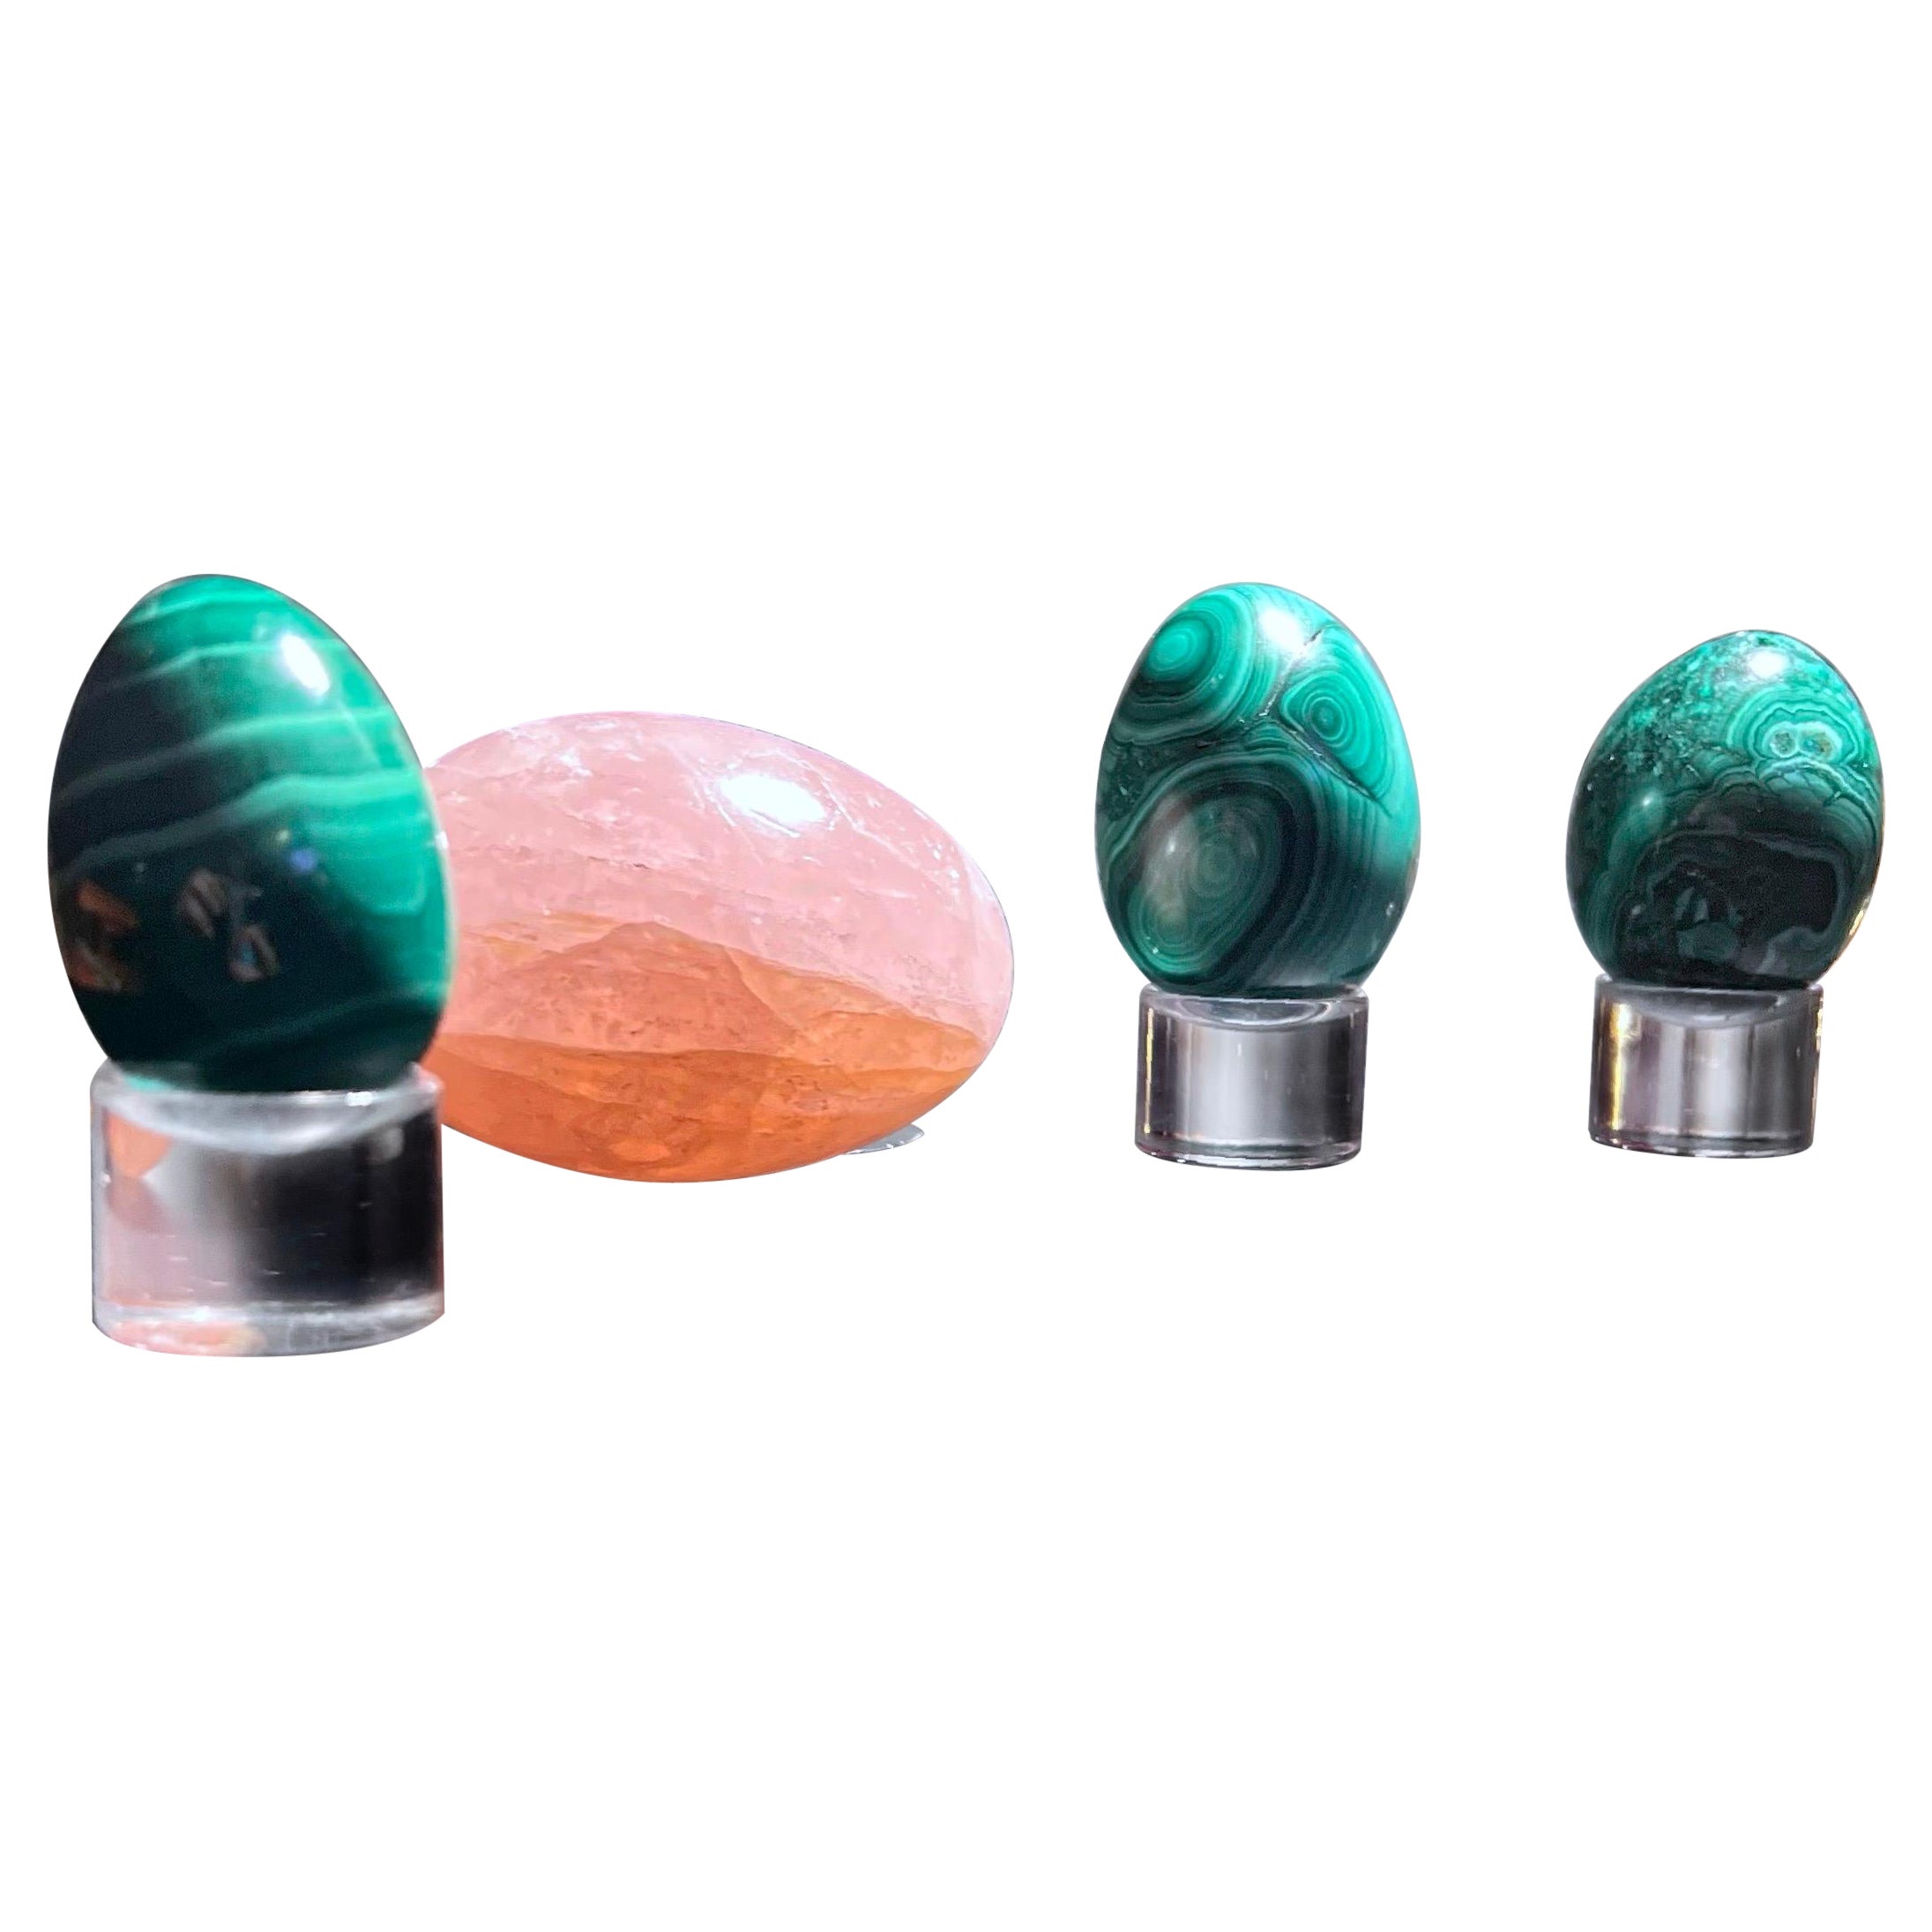 Ensemble de 4 œufs sculpturaux modernes et organiques en malachite et quartz rose sculptés à la main